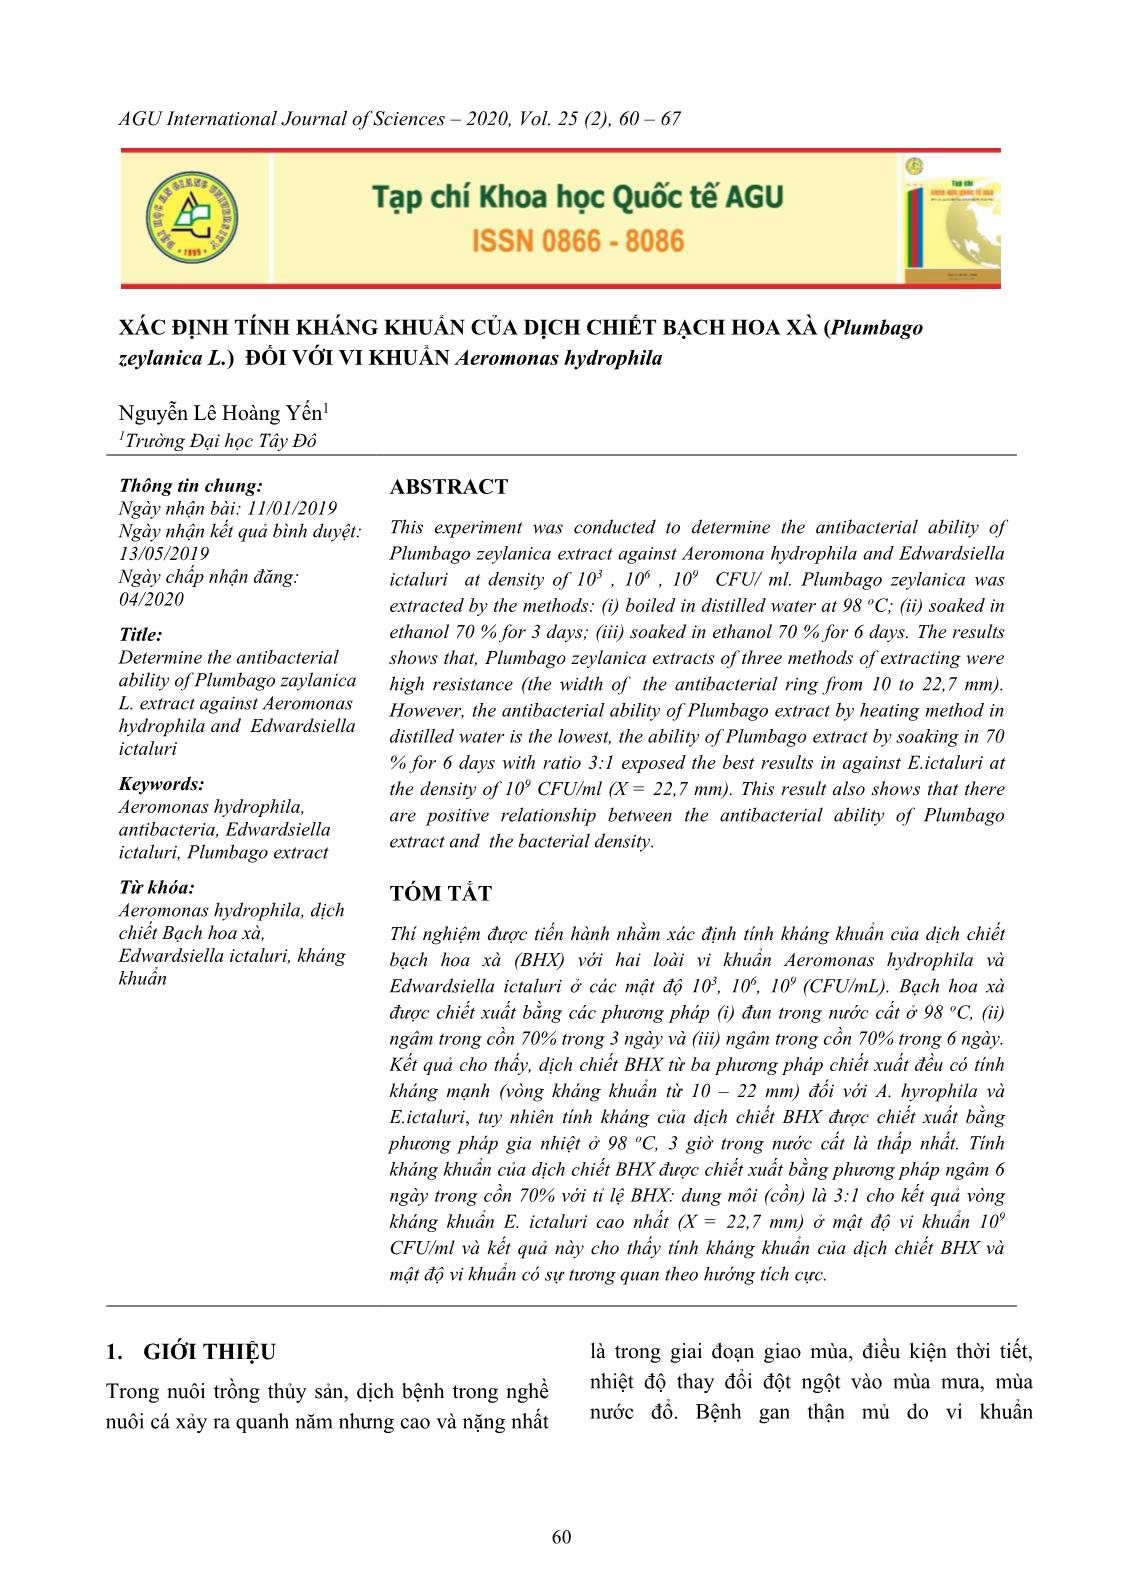 Xác định tính kháng khuẩn của dịch chiết bạch hoa xà (Plumbago zeylanica L.) đối với vi khuẩn Aeromonas hydrophila trang 1